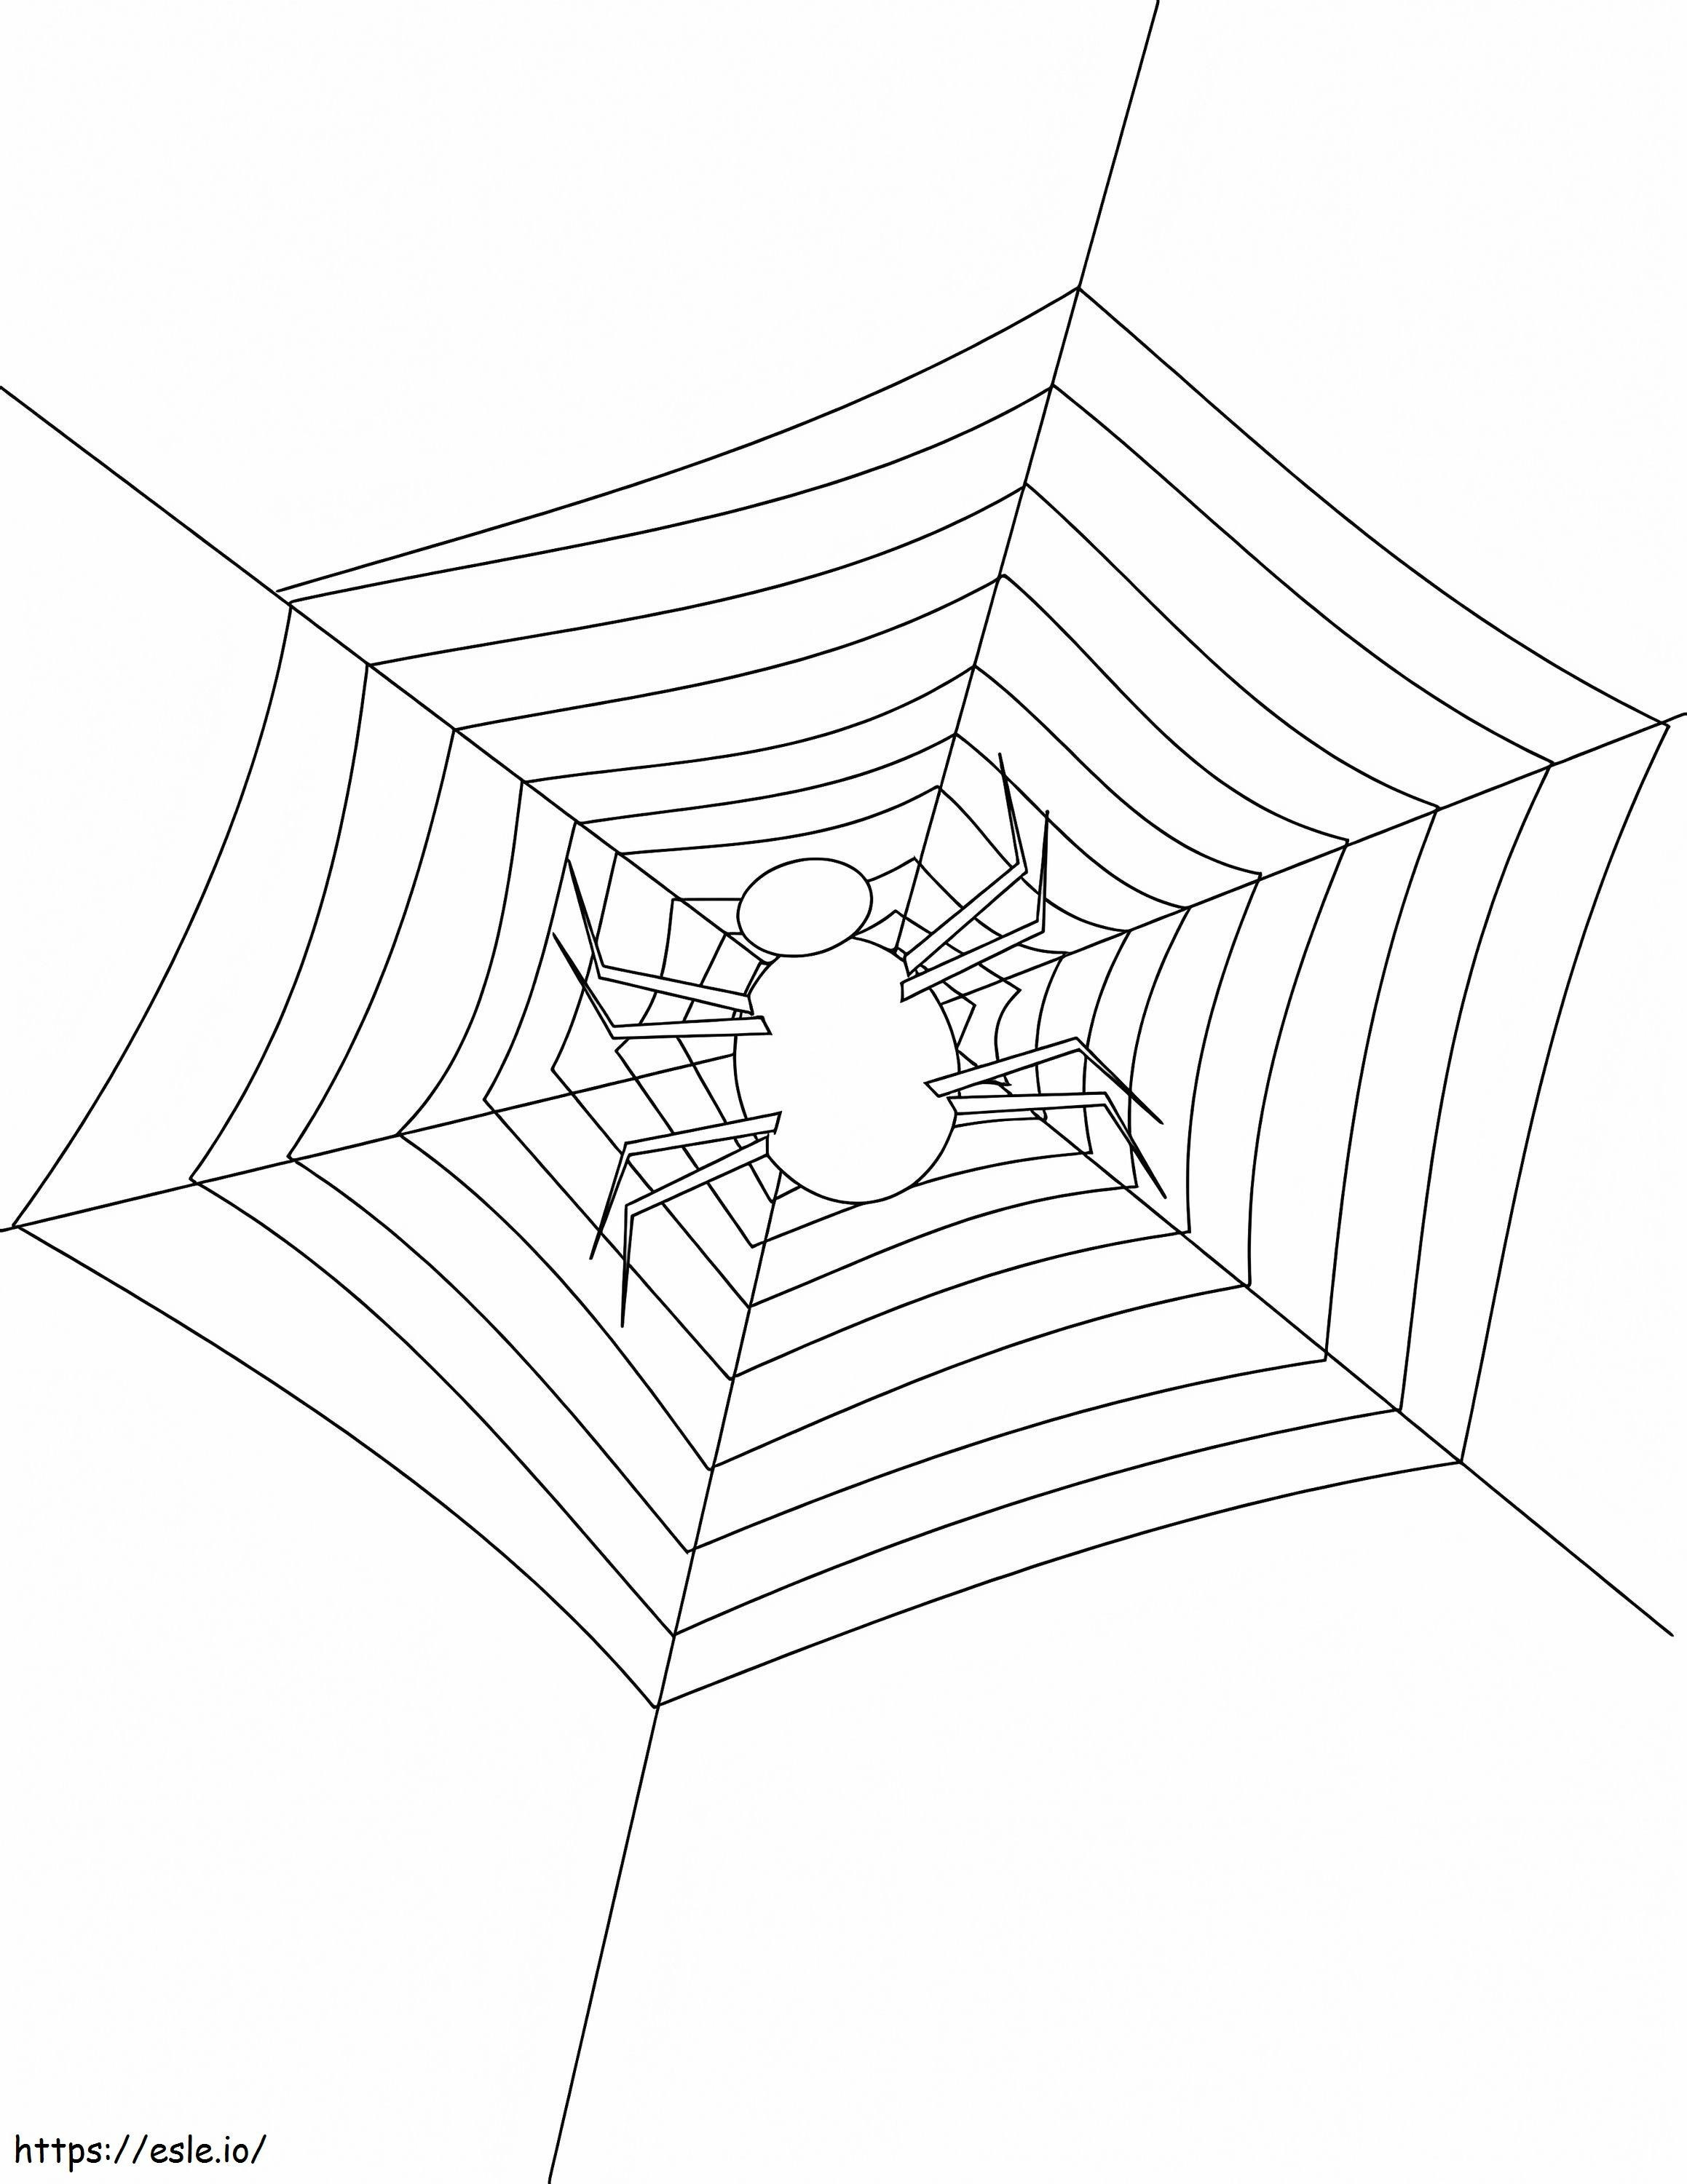 Păianjen ușor de imprimat de colorat